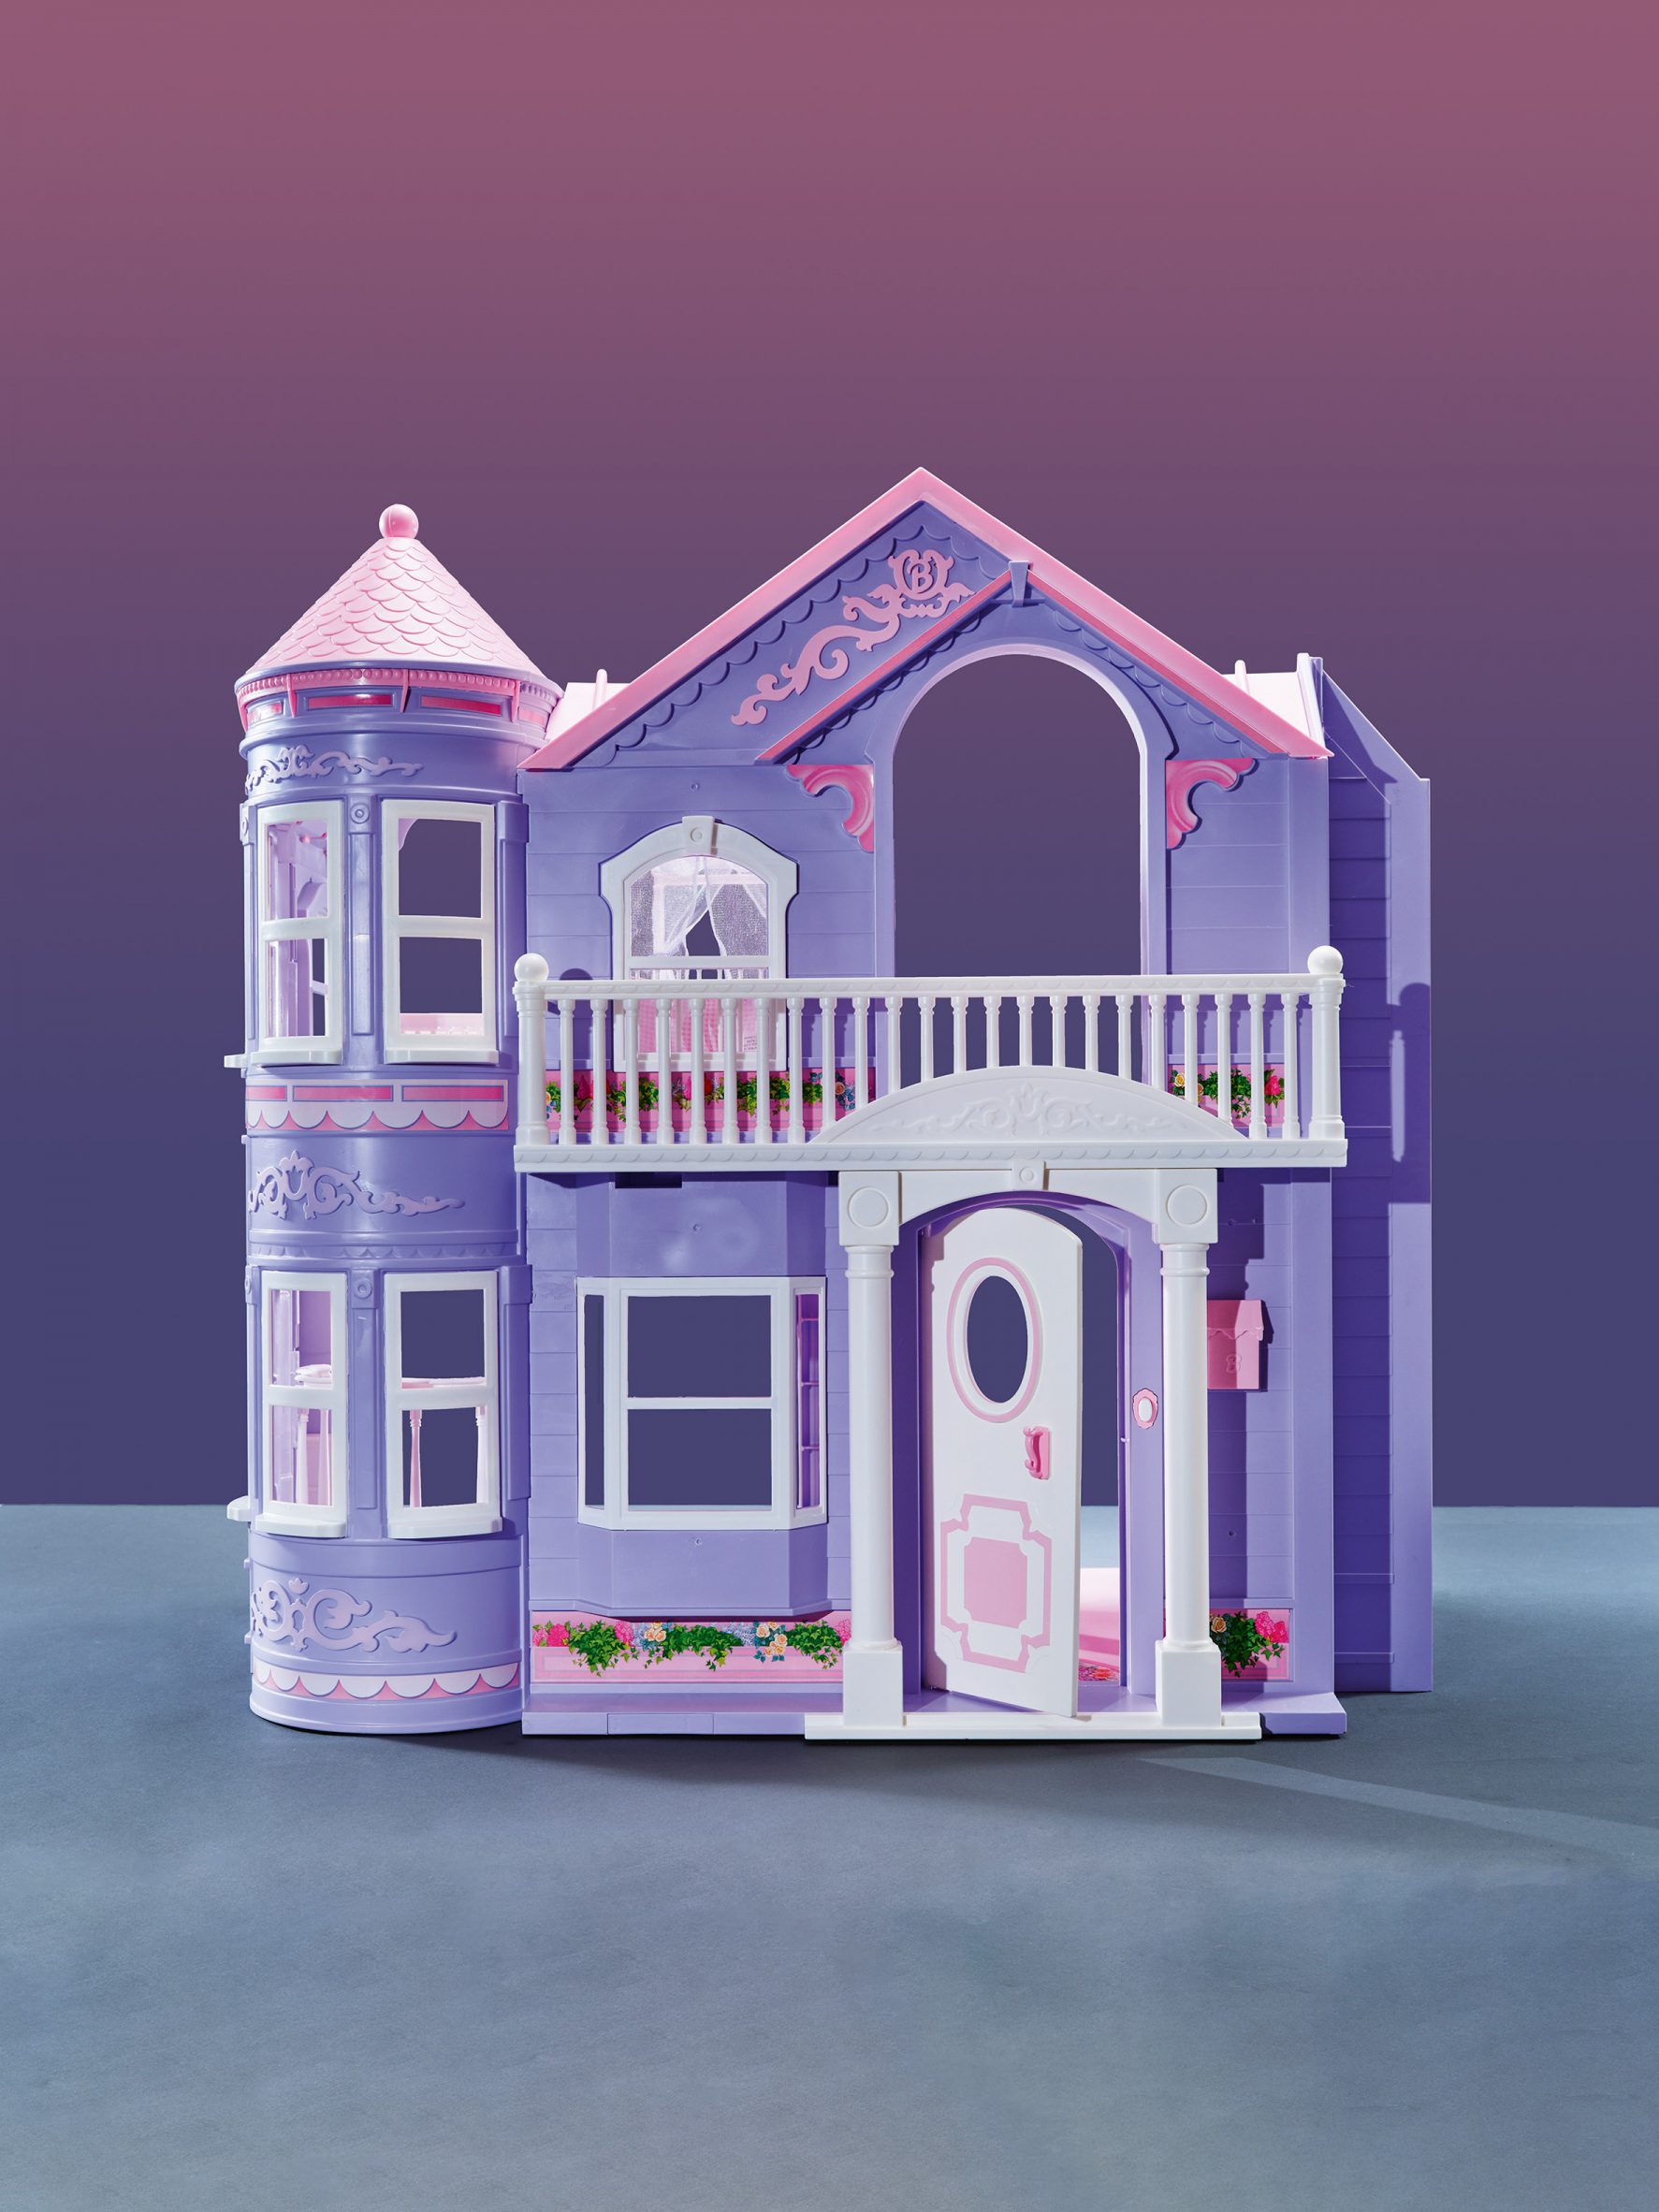 Purple castle-looking dollhouse from 2000